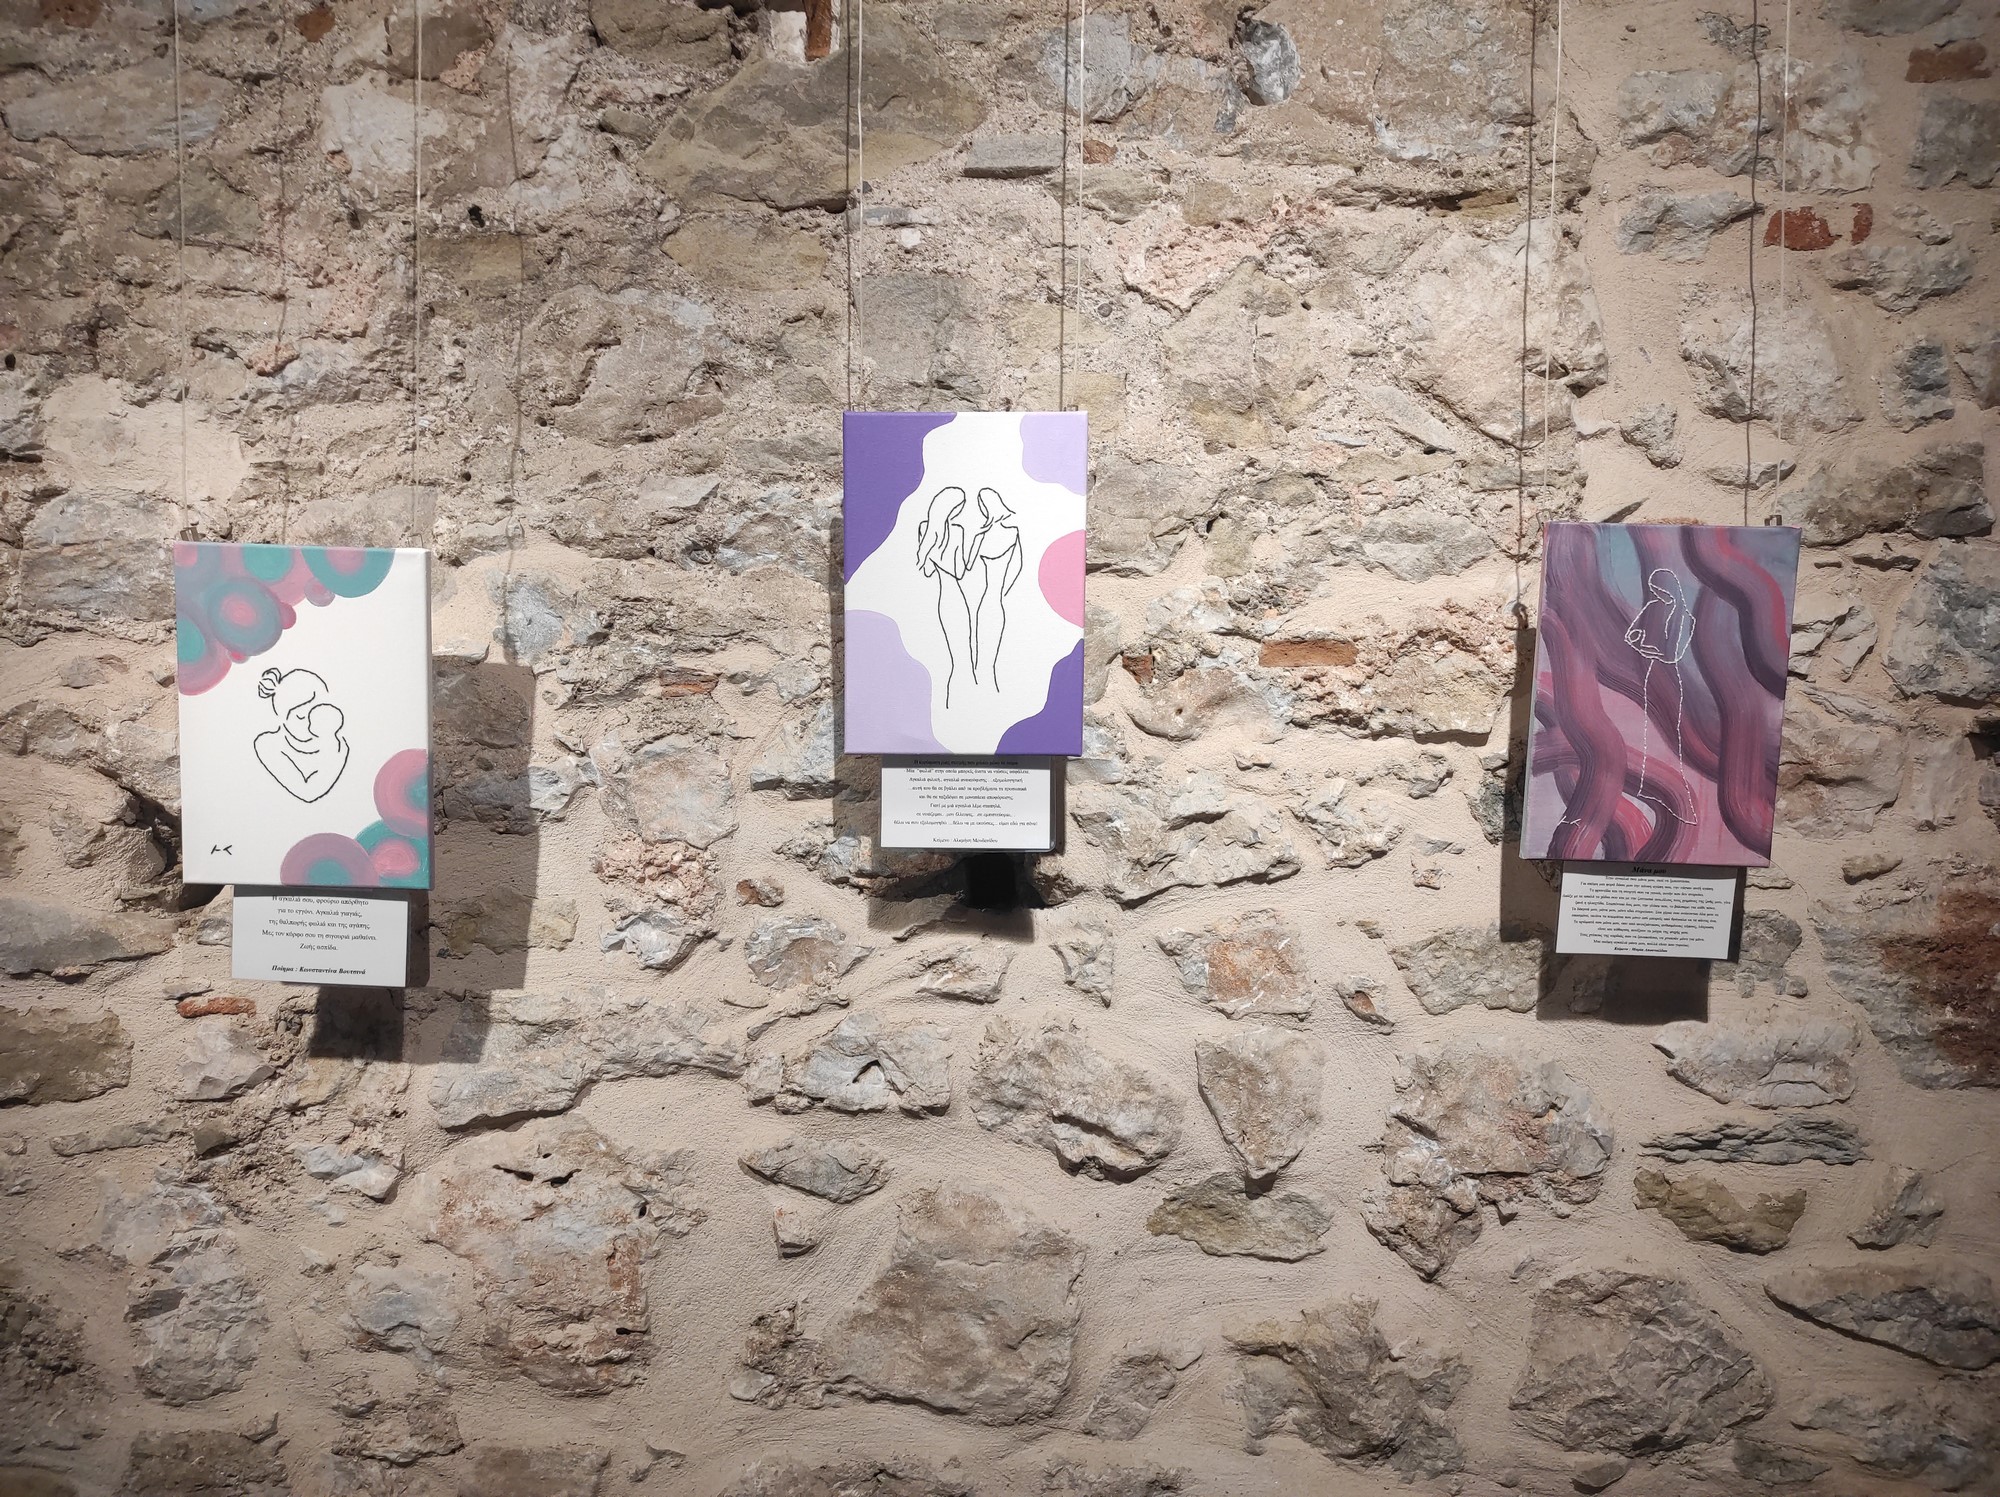 Κεντήματα και ζωγραφική σε συνάντηση Ξάνθης και Τρικάλων στο Μουσείο Τσιτσάνη